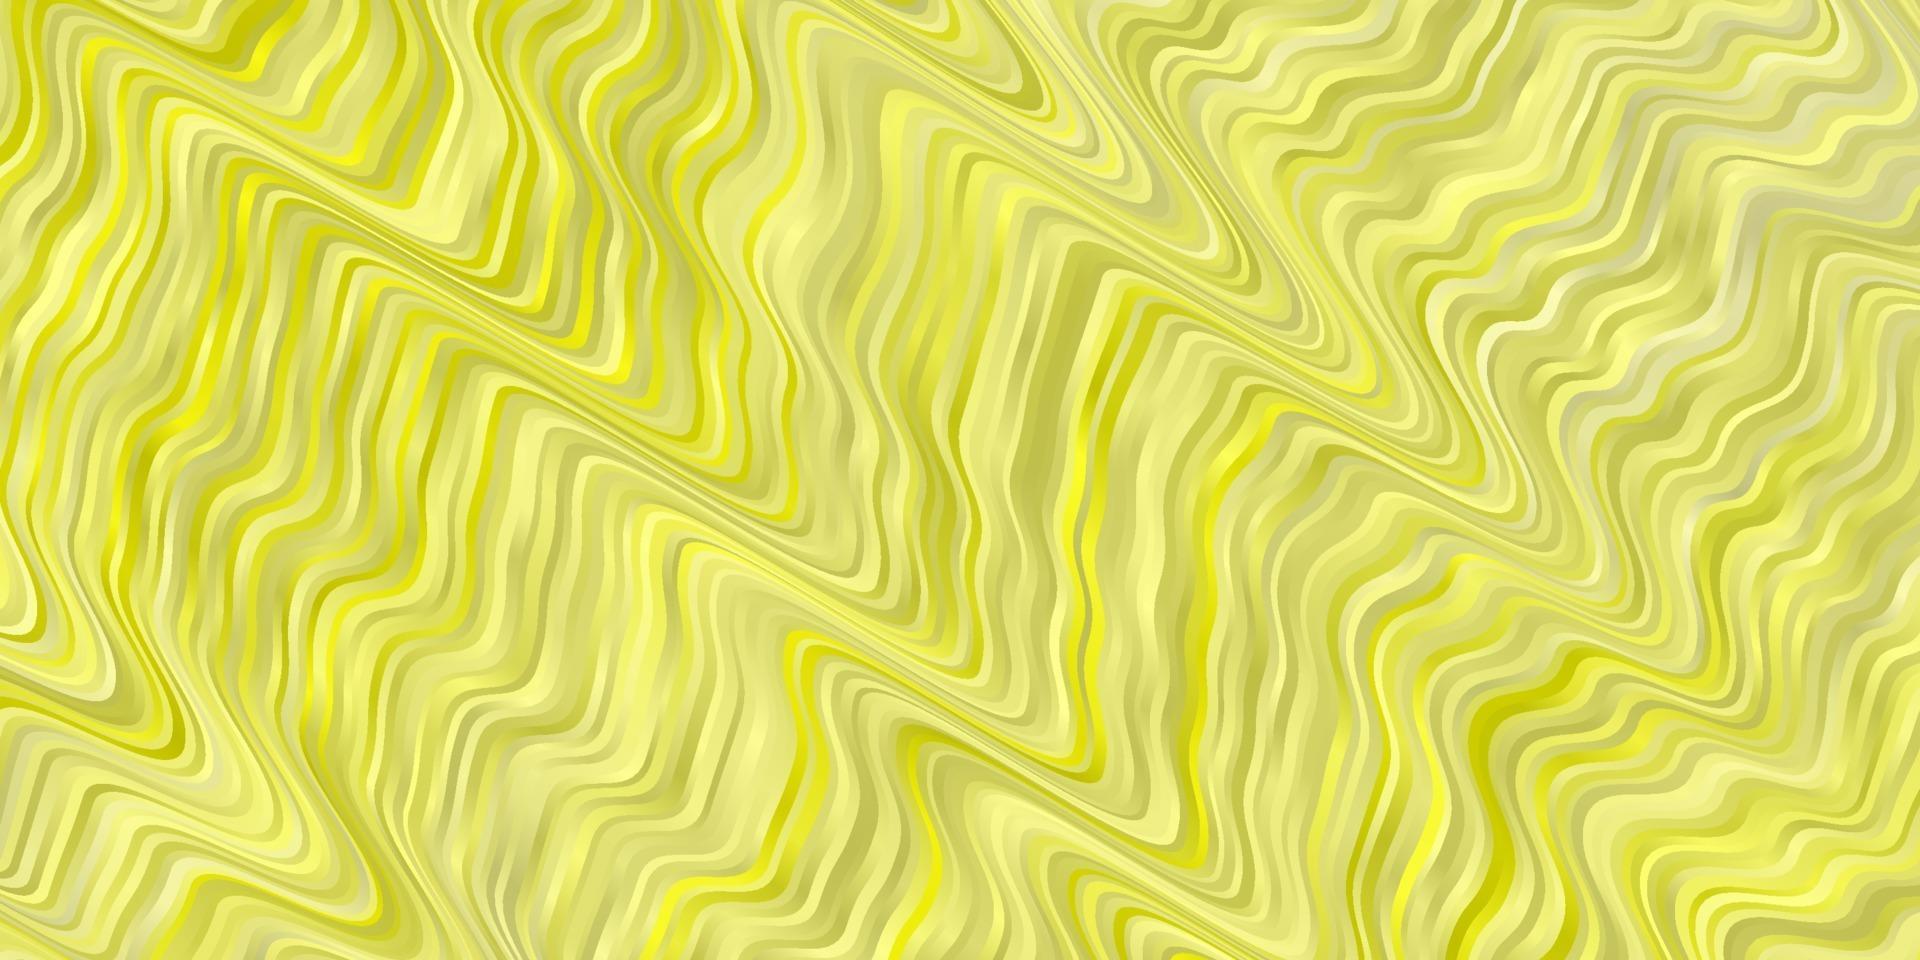 modello vettoriale giallo chiaro con linee.